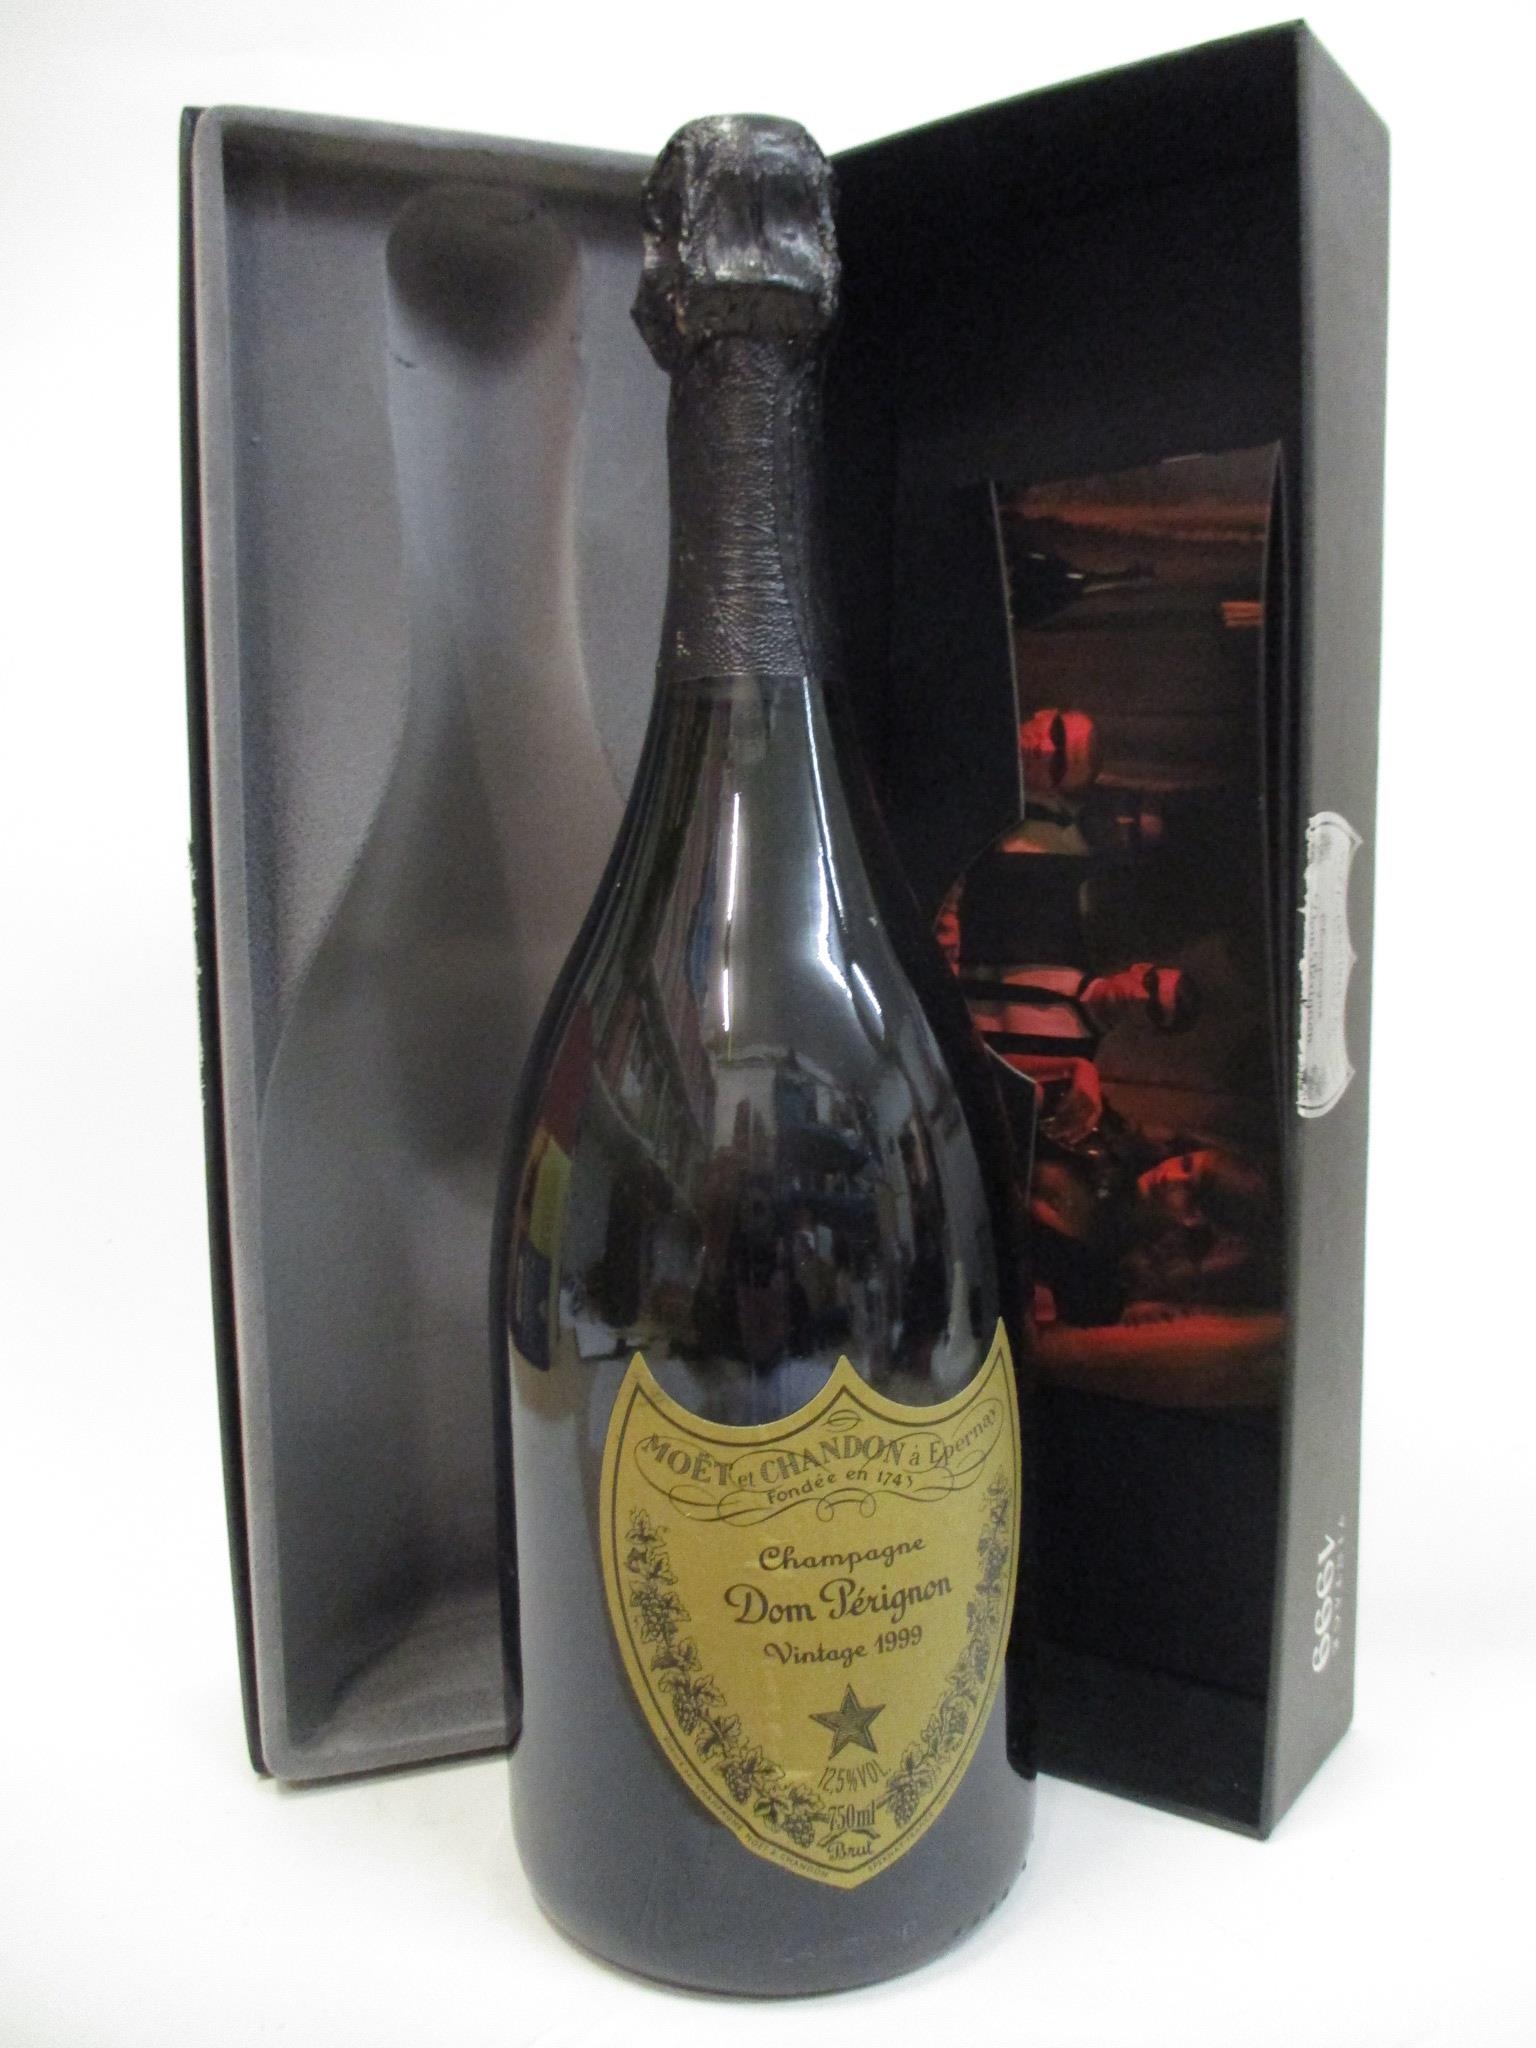 A single bottle of Moet et Chandon Dom Perignon, 1999 vintage champagne, boxed